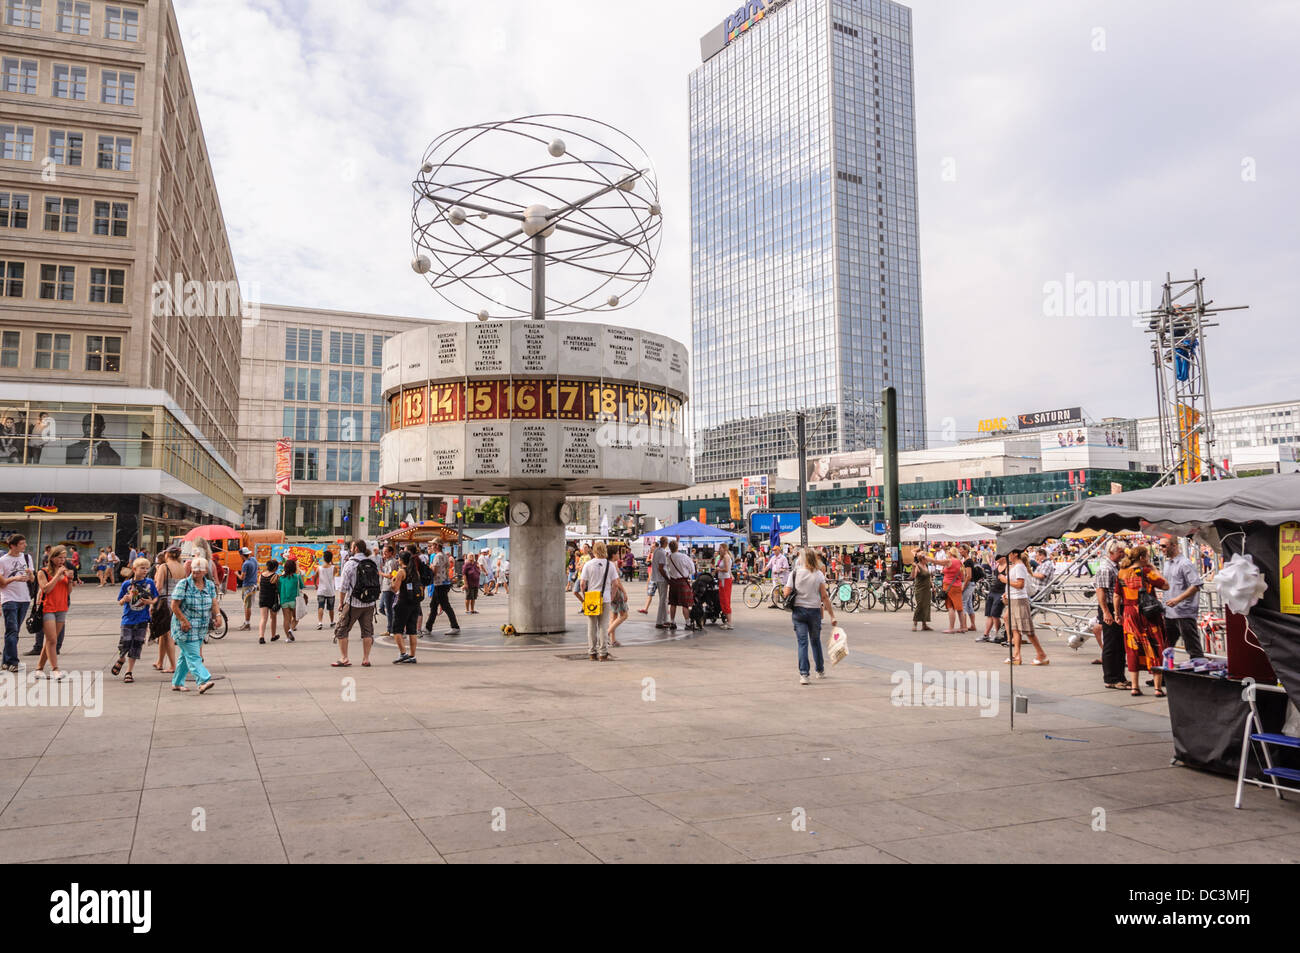 En el mercado de la calle Urania Reloj Mundial Berlin Alexanderplatz (Alex),  Alemania Fotografía de stock - Alamy